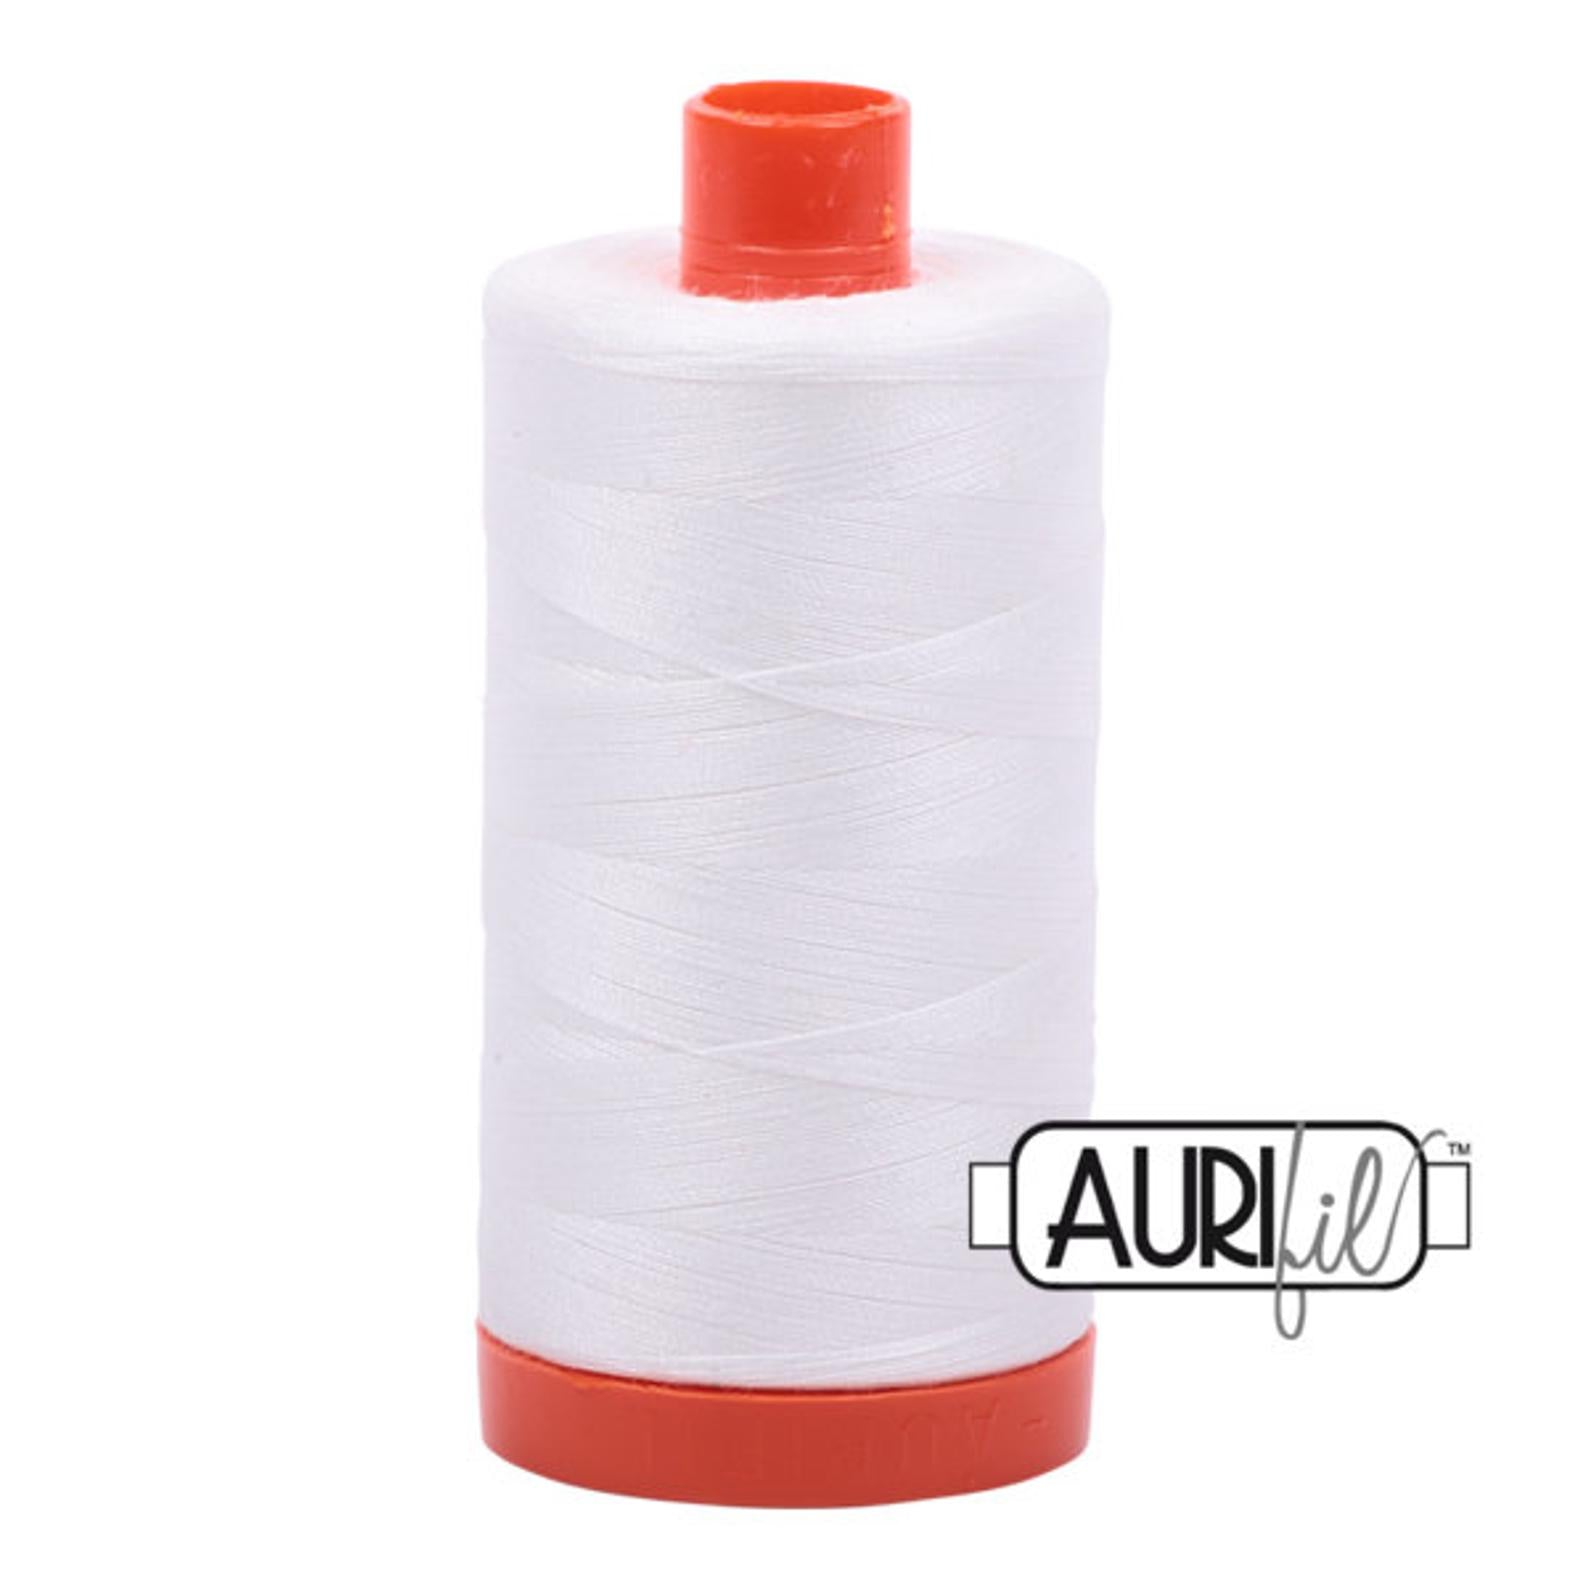 Aurifil 50 wt cotton thread, 1300m, Natural White (2021)